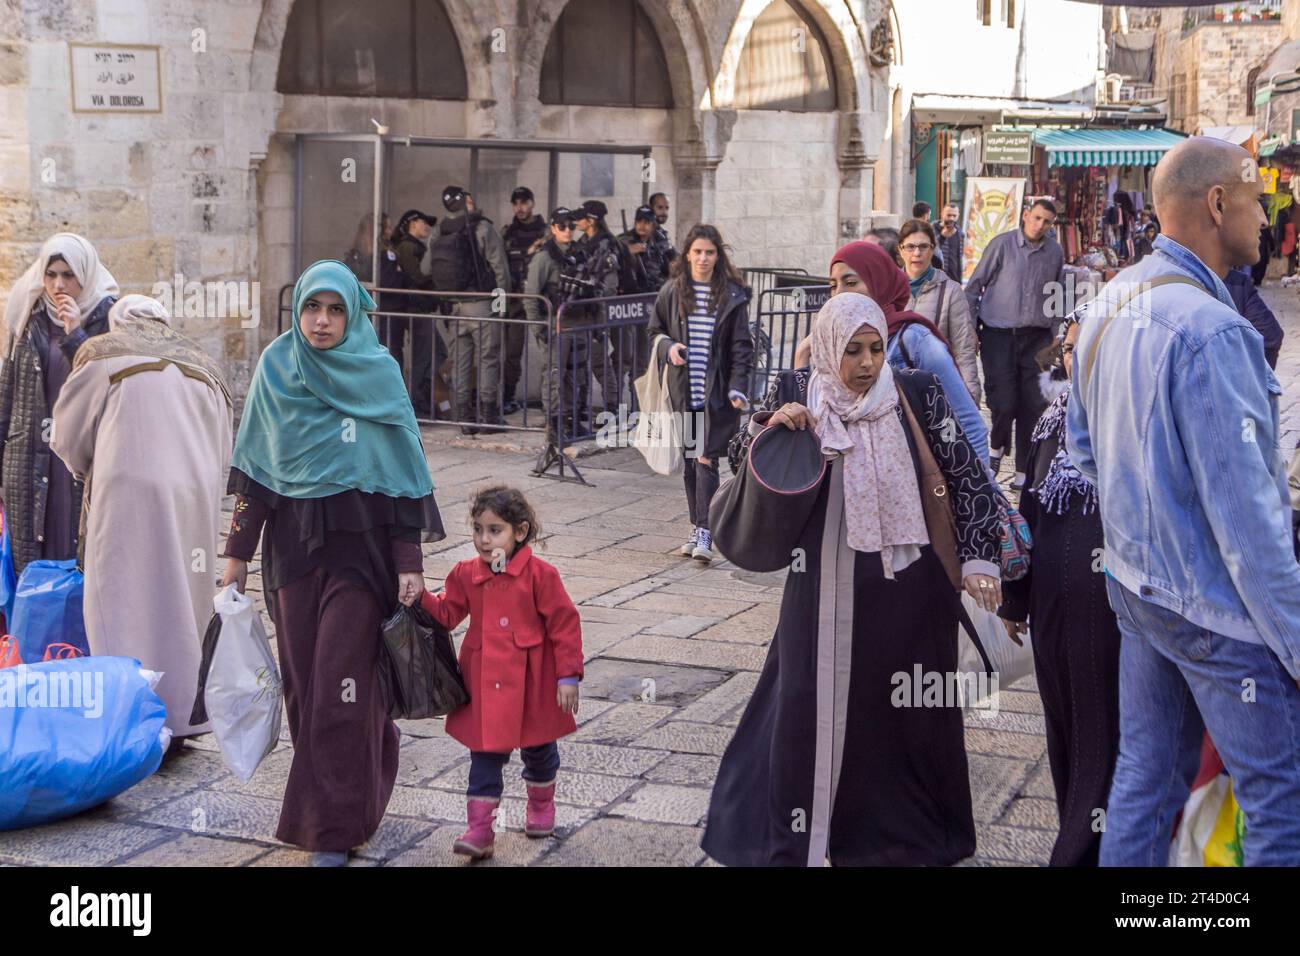 Die Einheimischen, verschleierte muslimische Frauen, jüdische Leute, Touristen vor dem gepanzerten Polizeikontrollpunkt in der Via Dolorosa, Jerusalem Altstadt, Israel. Stockfoto